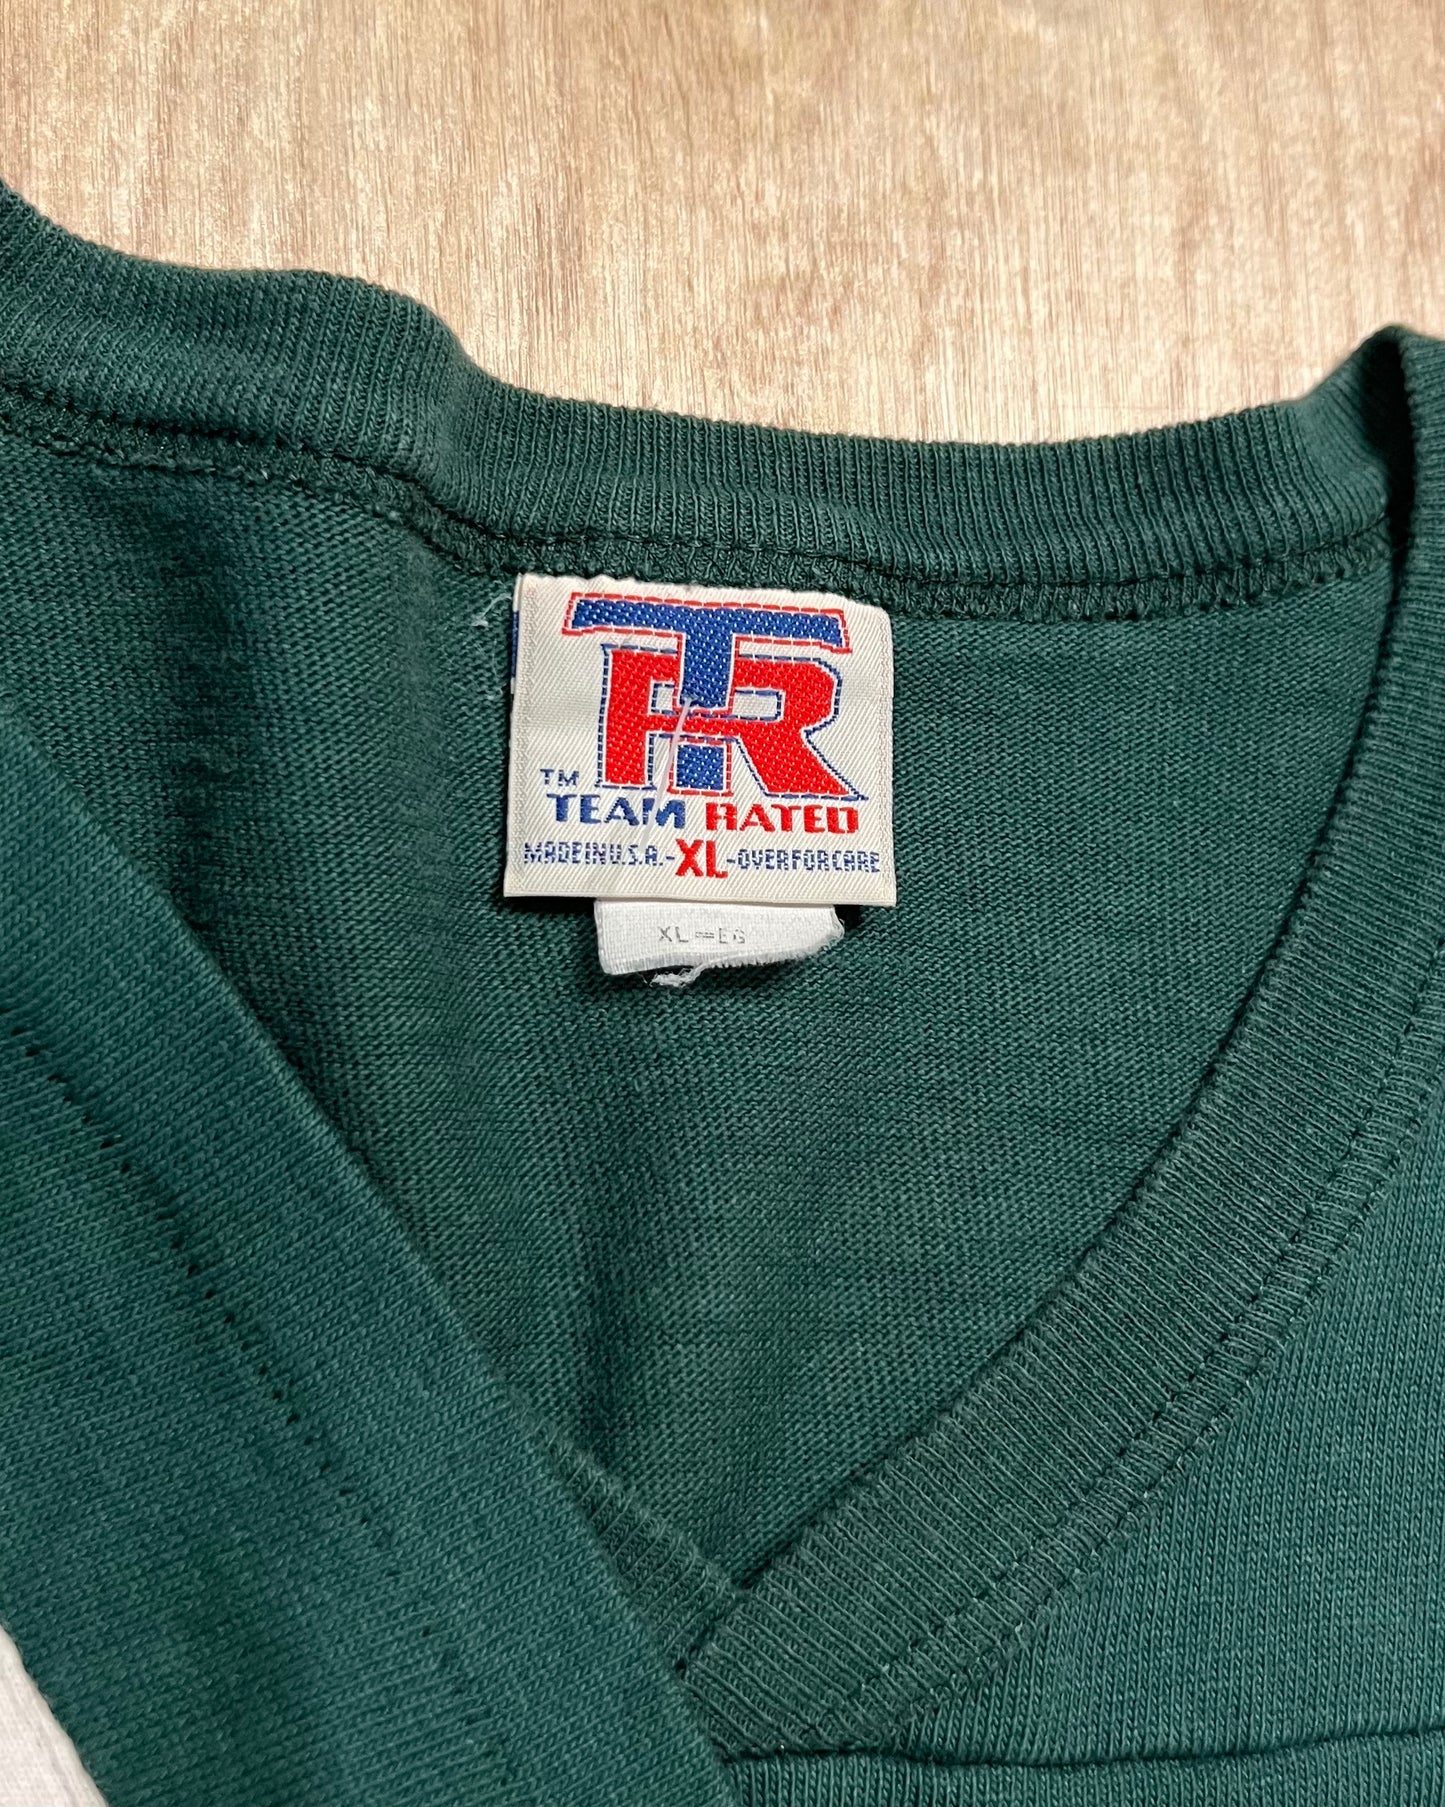 1996 Green Bay Packers Single Stitch Jersey T-Shirt